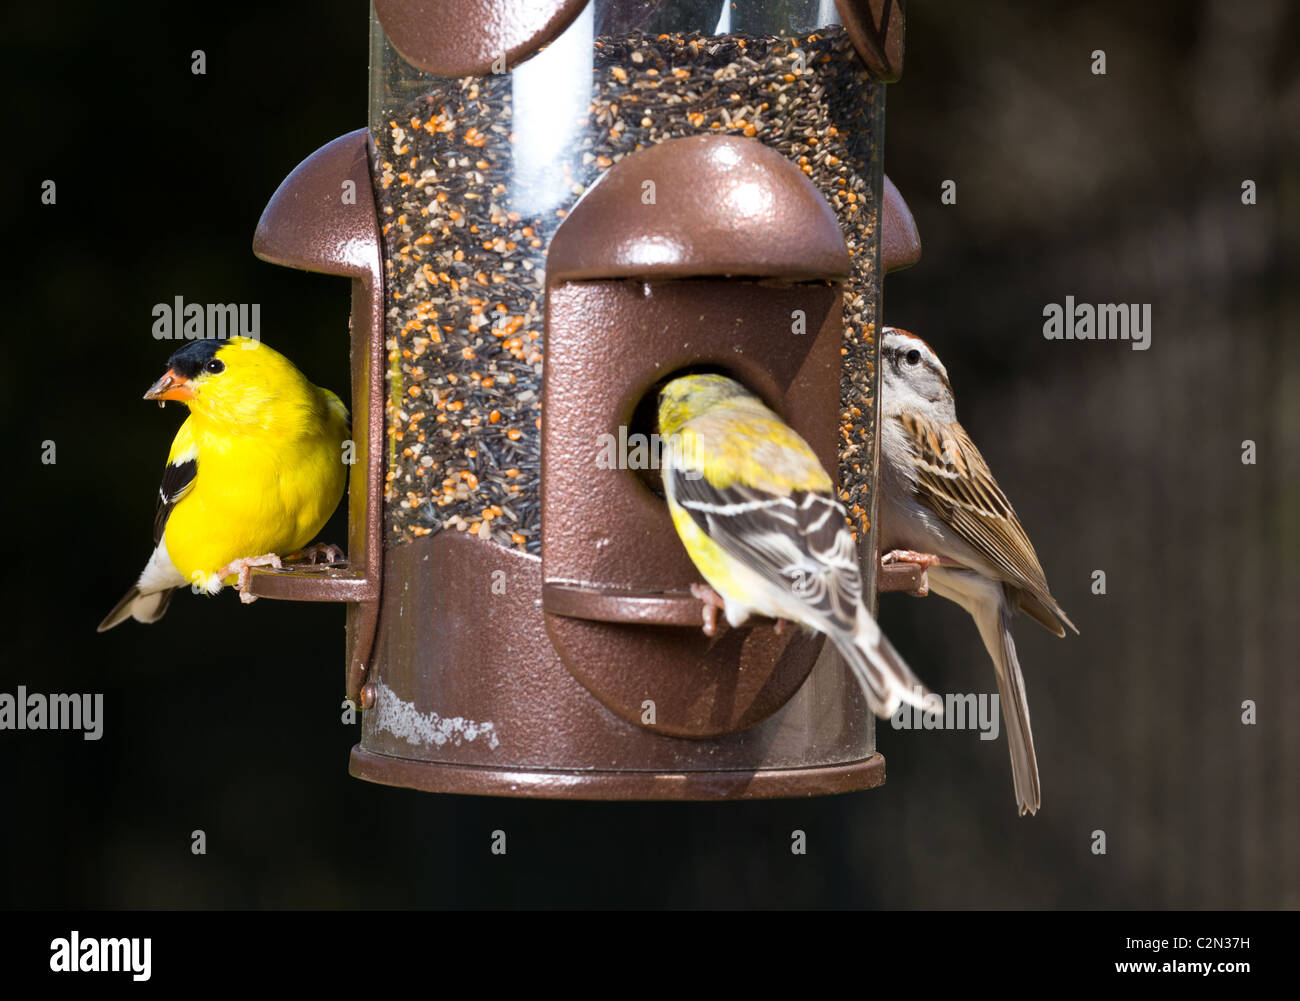 Les oiseaux de jardin y compris un chardonneret jaune jaune vif à partir de l'alimentation moderne une mangeoire, USA Banque D'Images